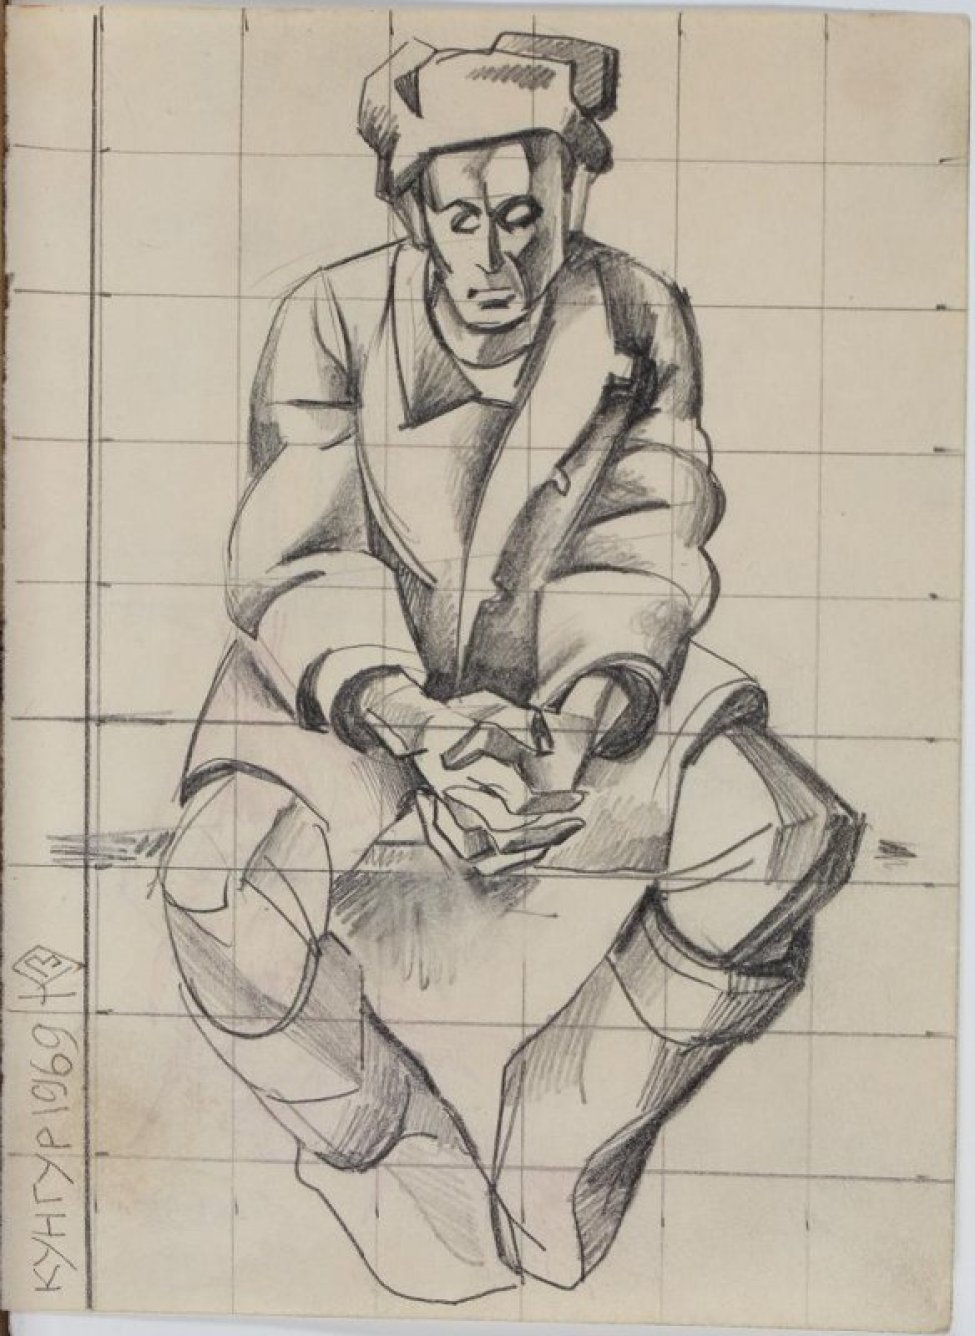 Изображен мужчина, сидящий с широко расставленными ногами, в шапке, телогрейке, валенках; руки сцеплены.